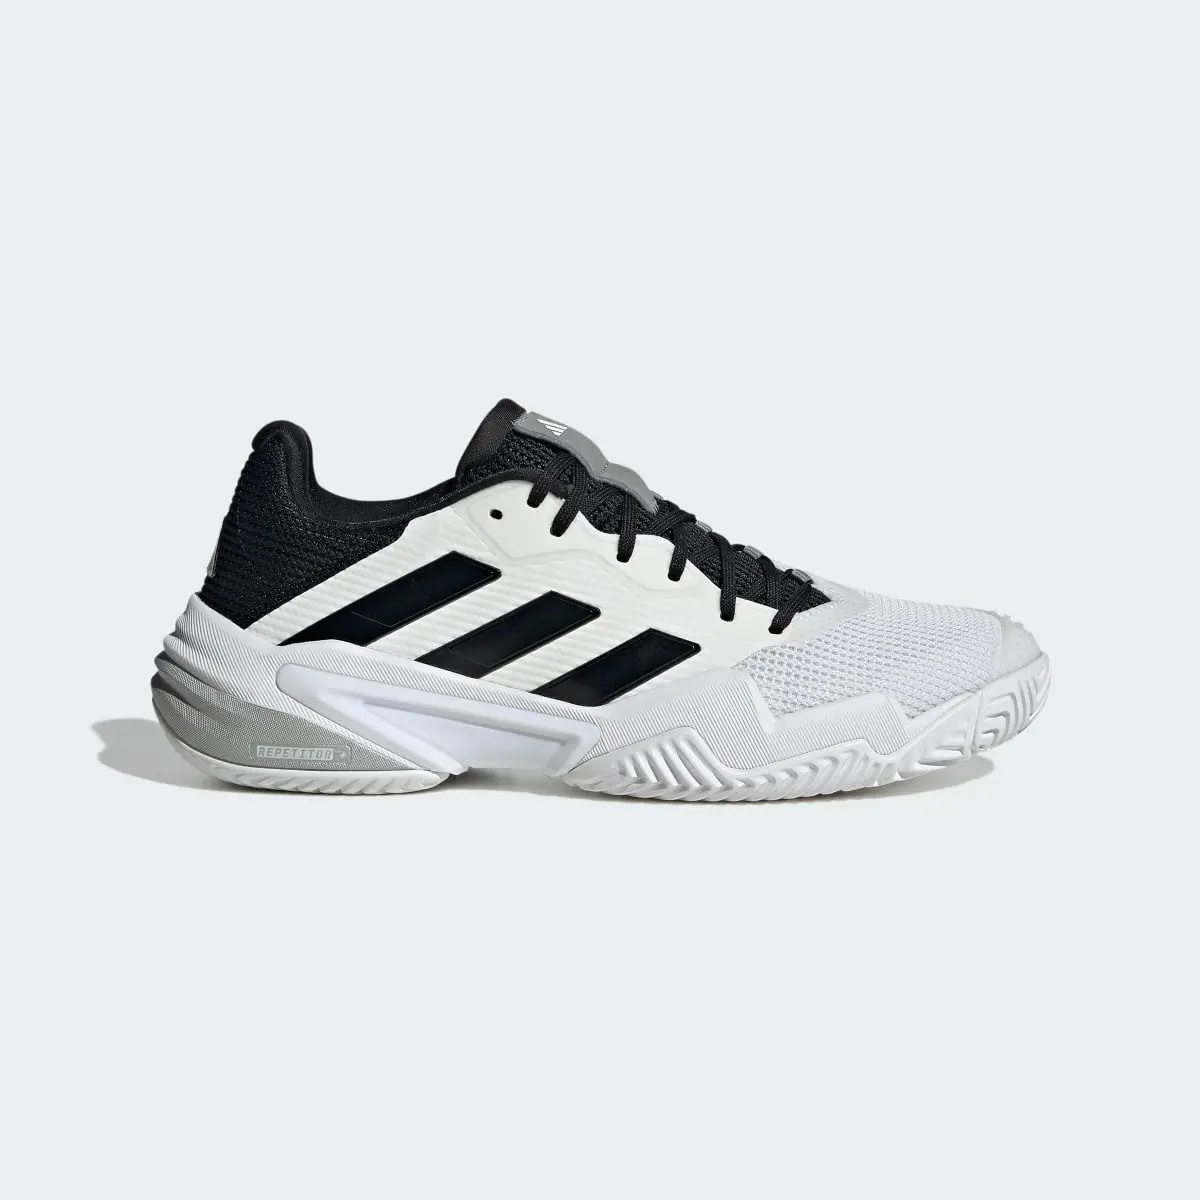 Adidas Chaussure de tennis Barricade 13. 2